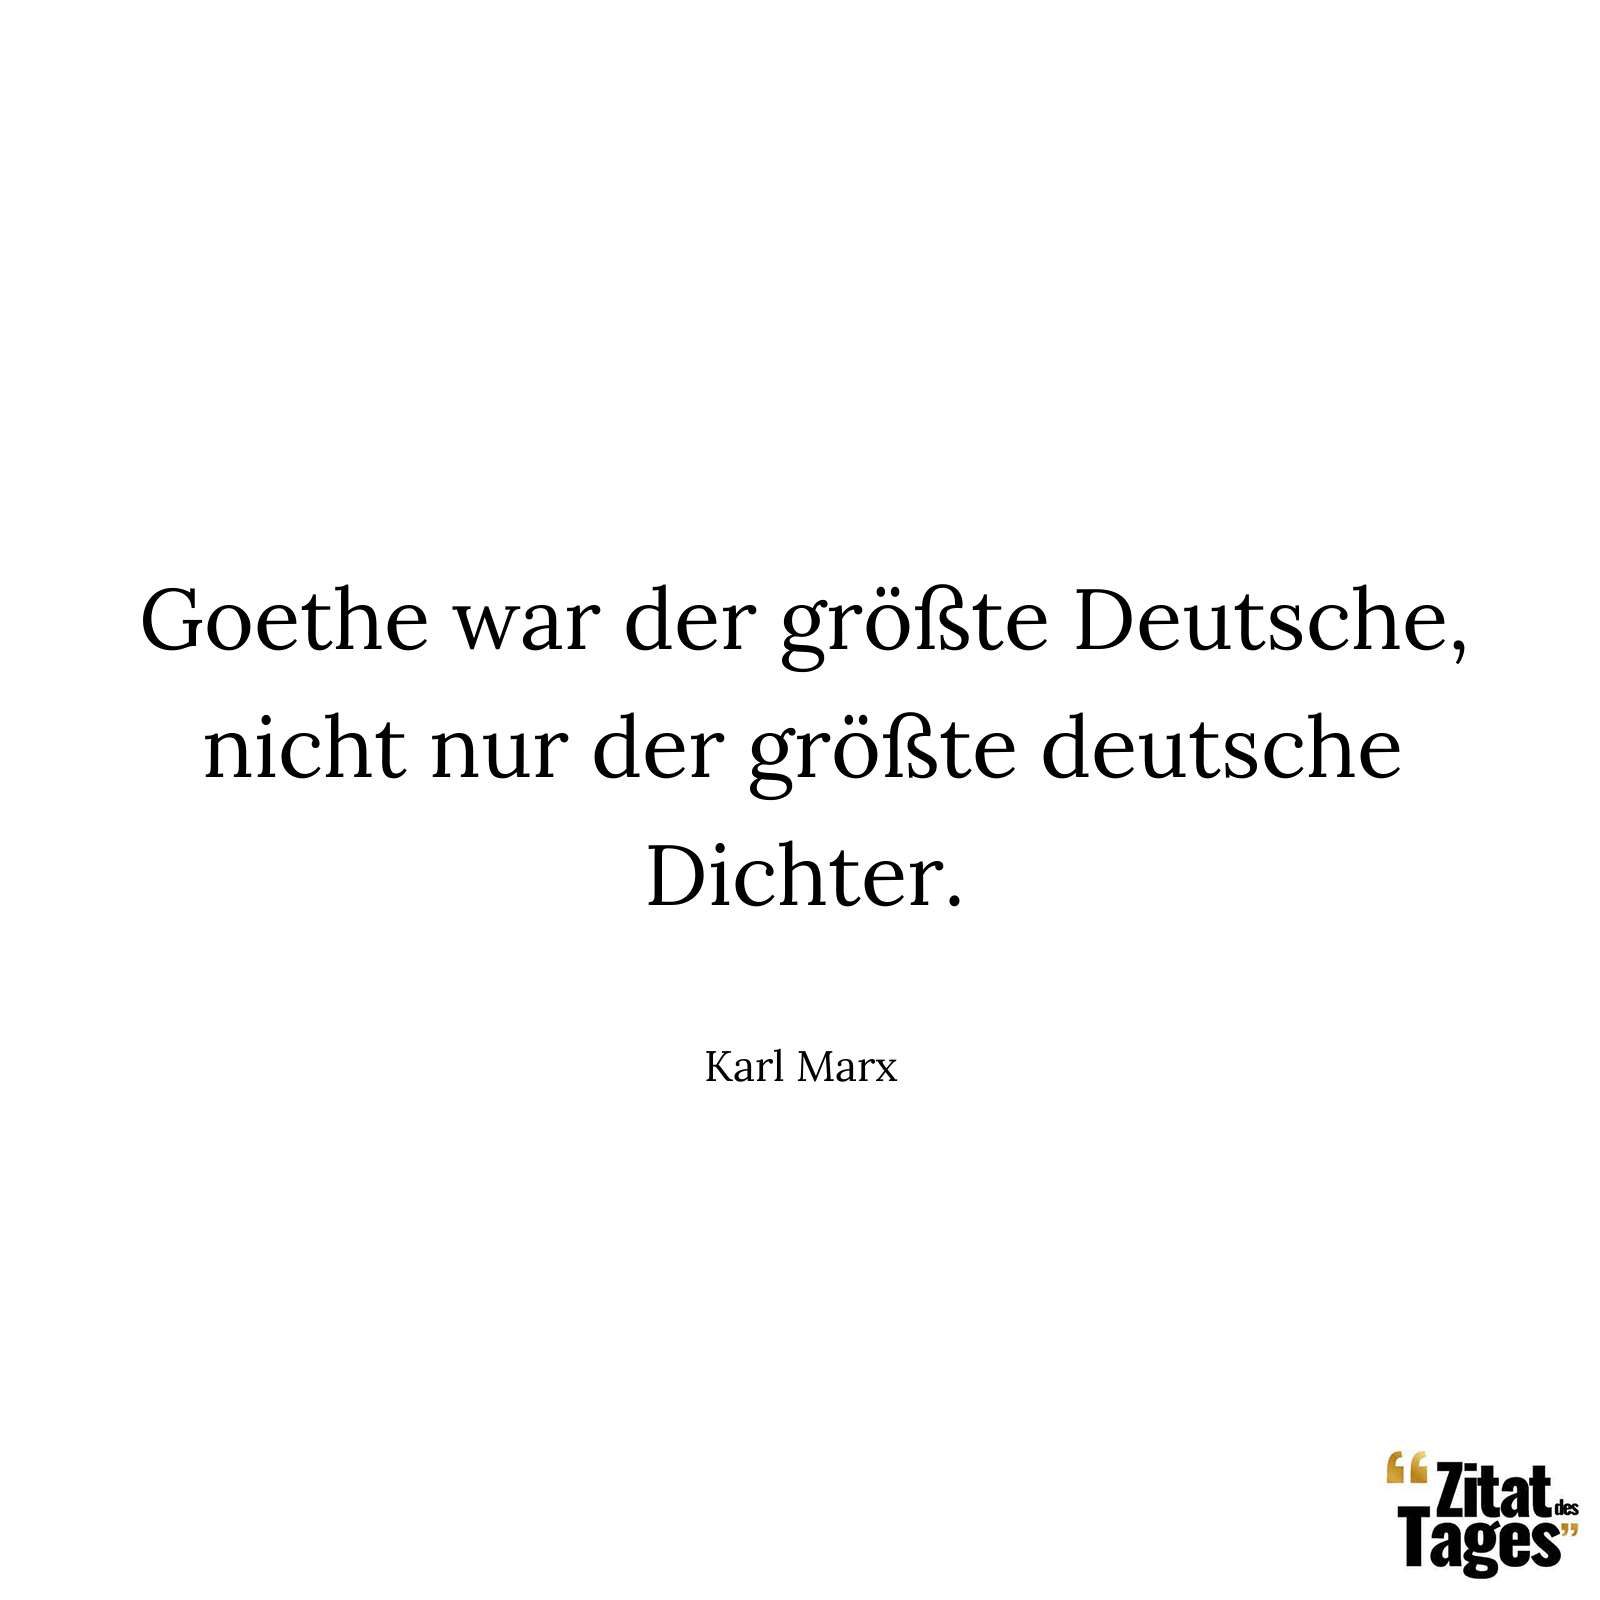 Goethe war der größte Deutsche, nicht nur der größte deutsche Dichter. - Karl Marx